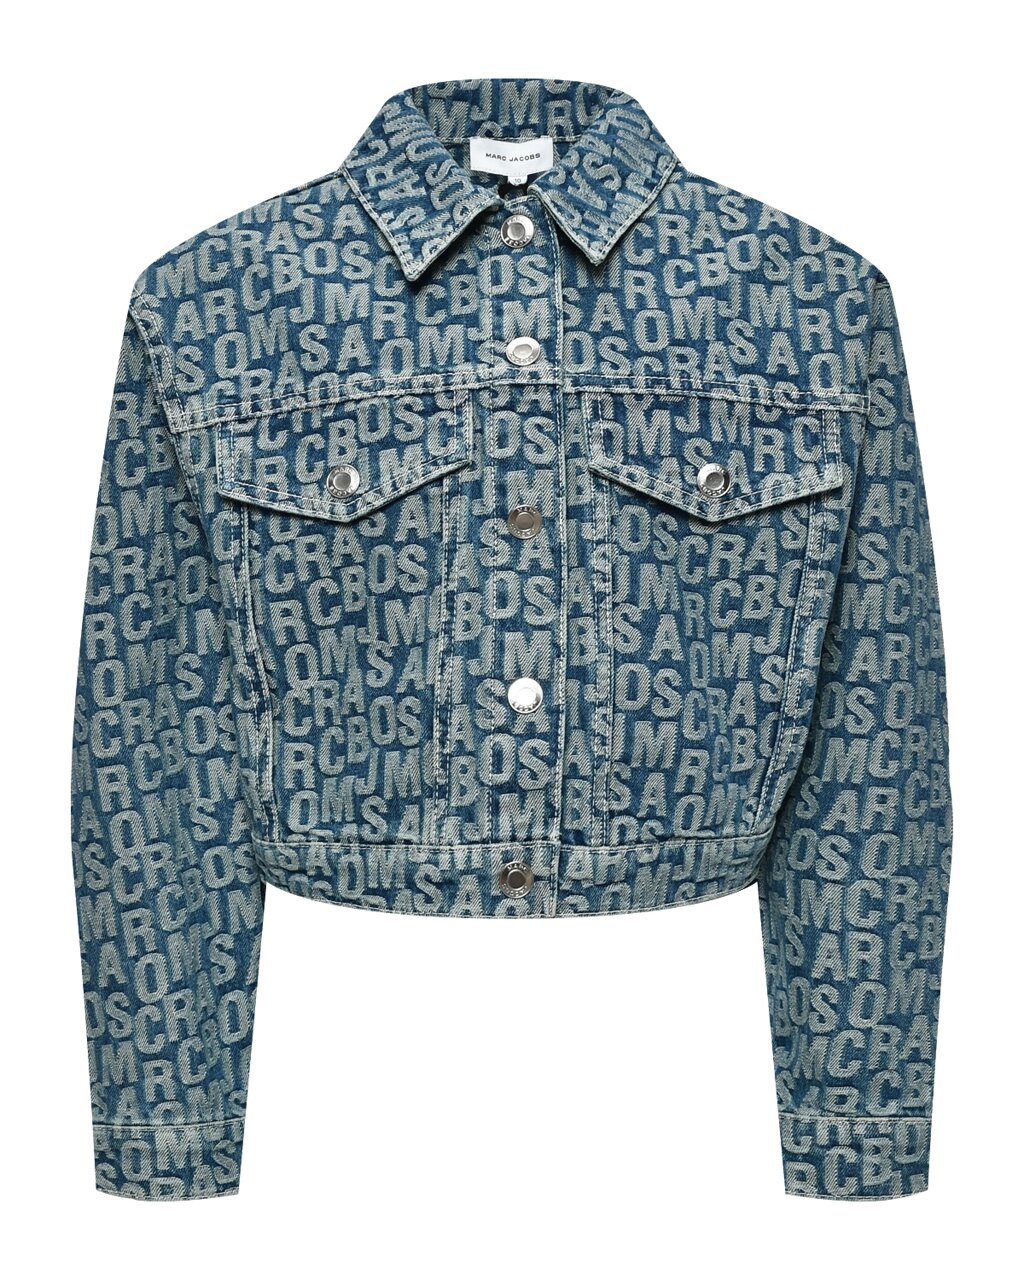 Джинсовая куртка со сплошным лого Marc Jacobs (The) от компании Admi - фото 1